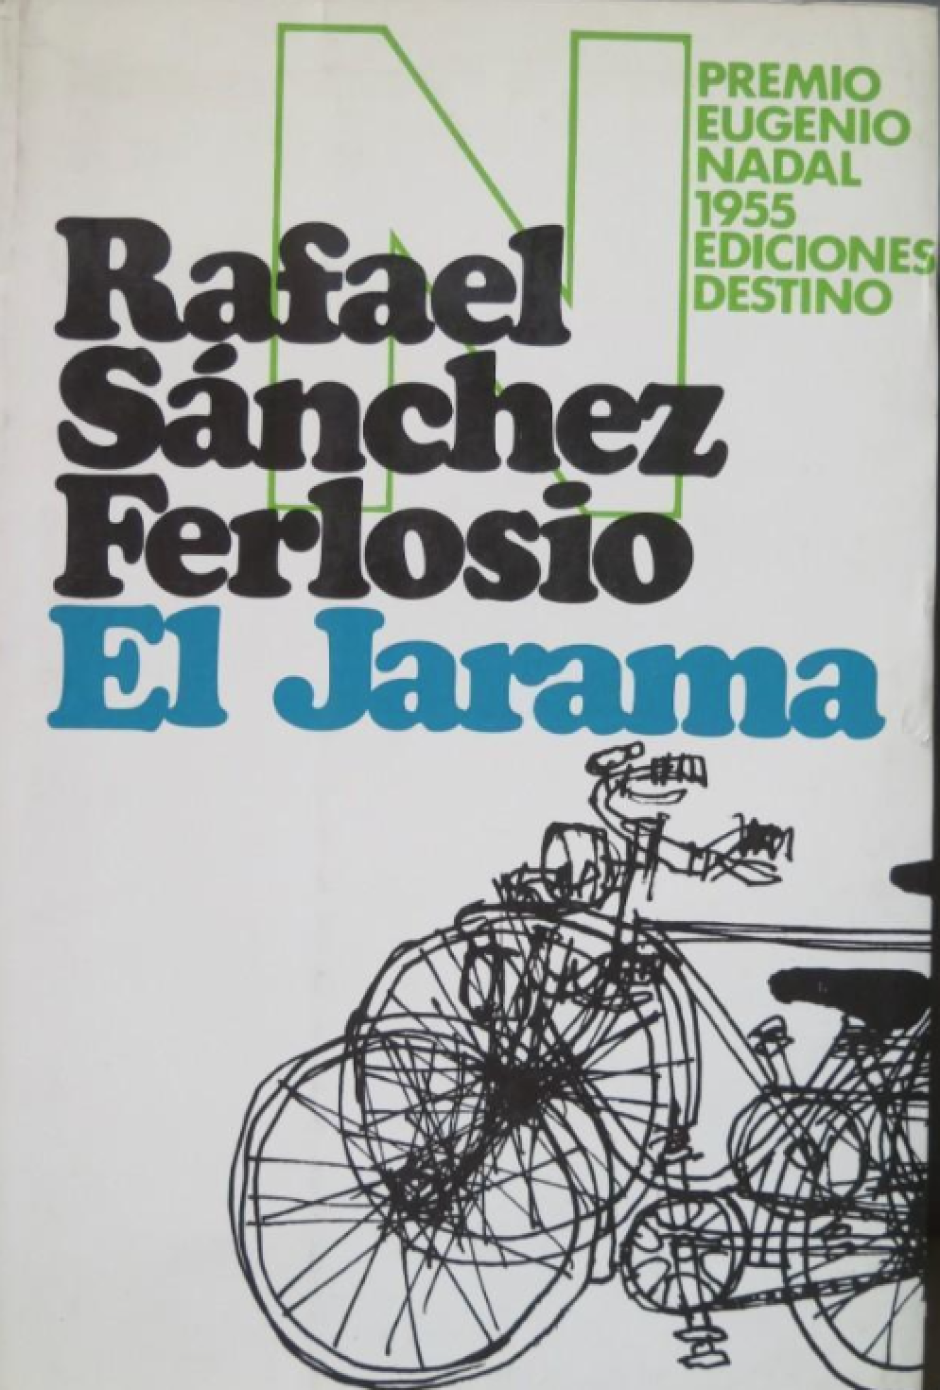 'El Jarama' (1956) de Rafael Sánchez Ferlosio